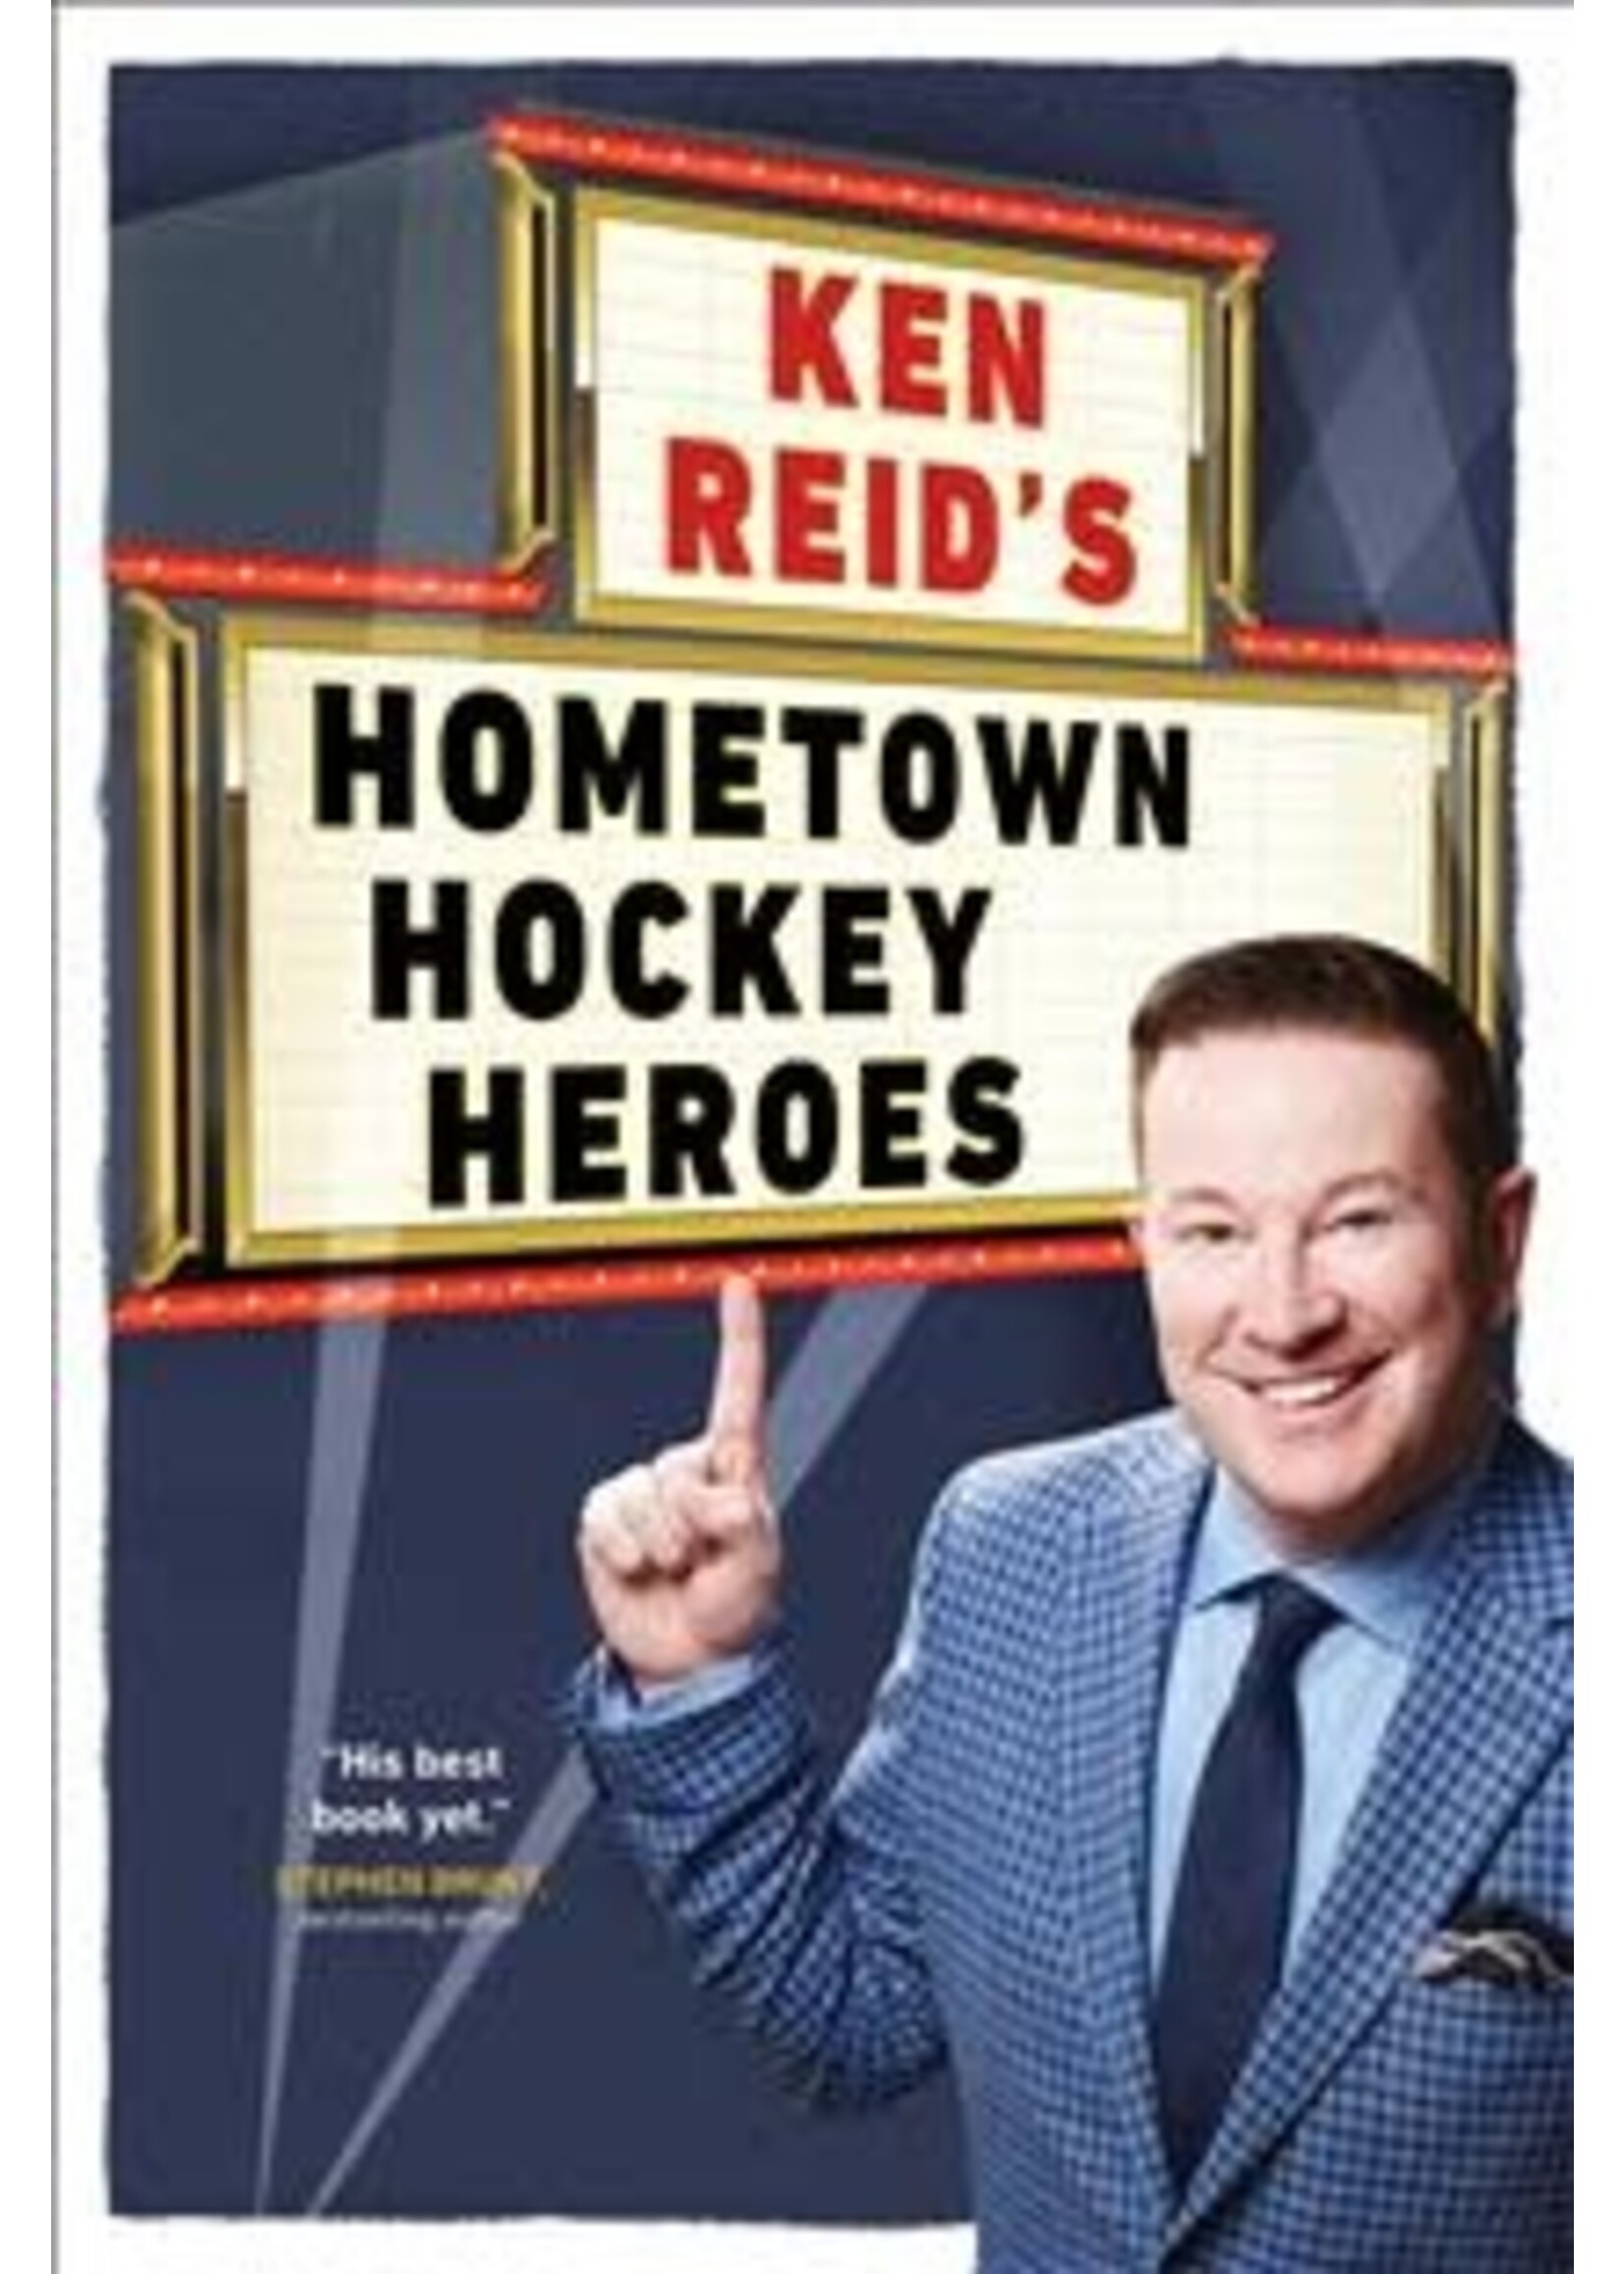 Ken Reid's Hometown Hockey Heroes by Ken Reid